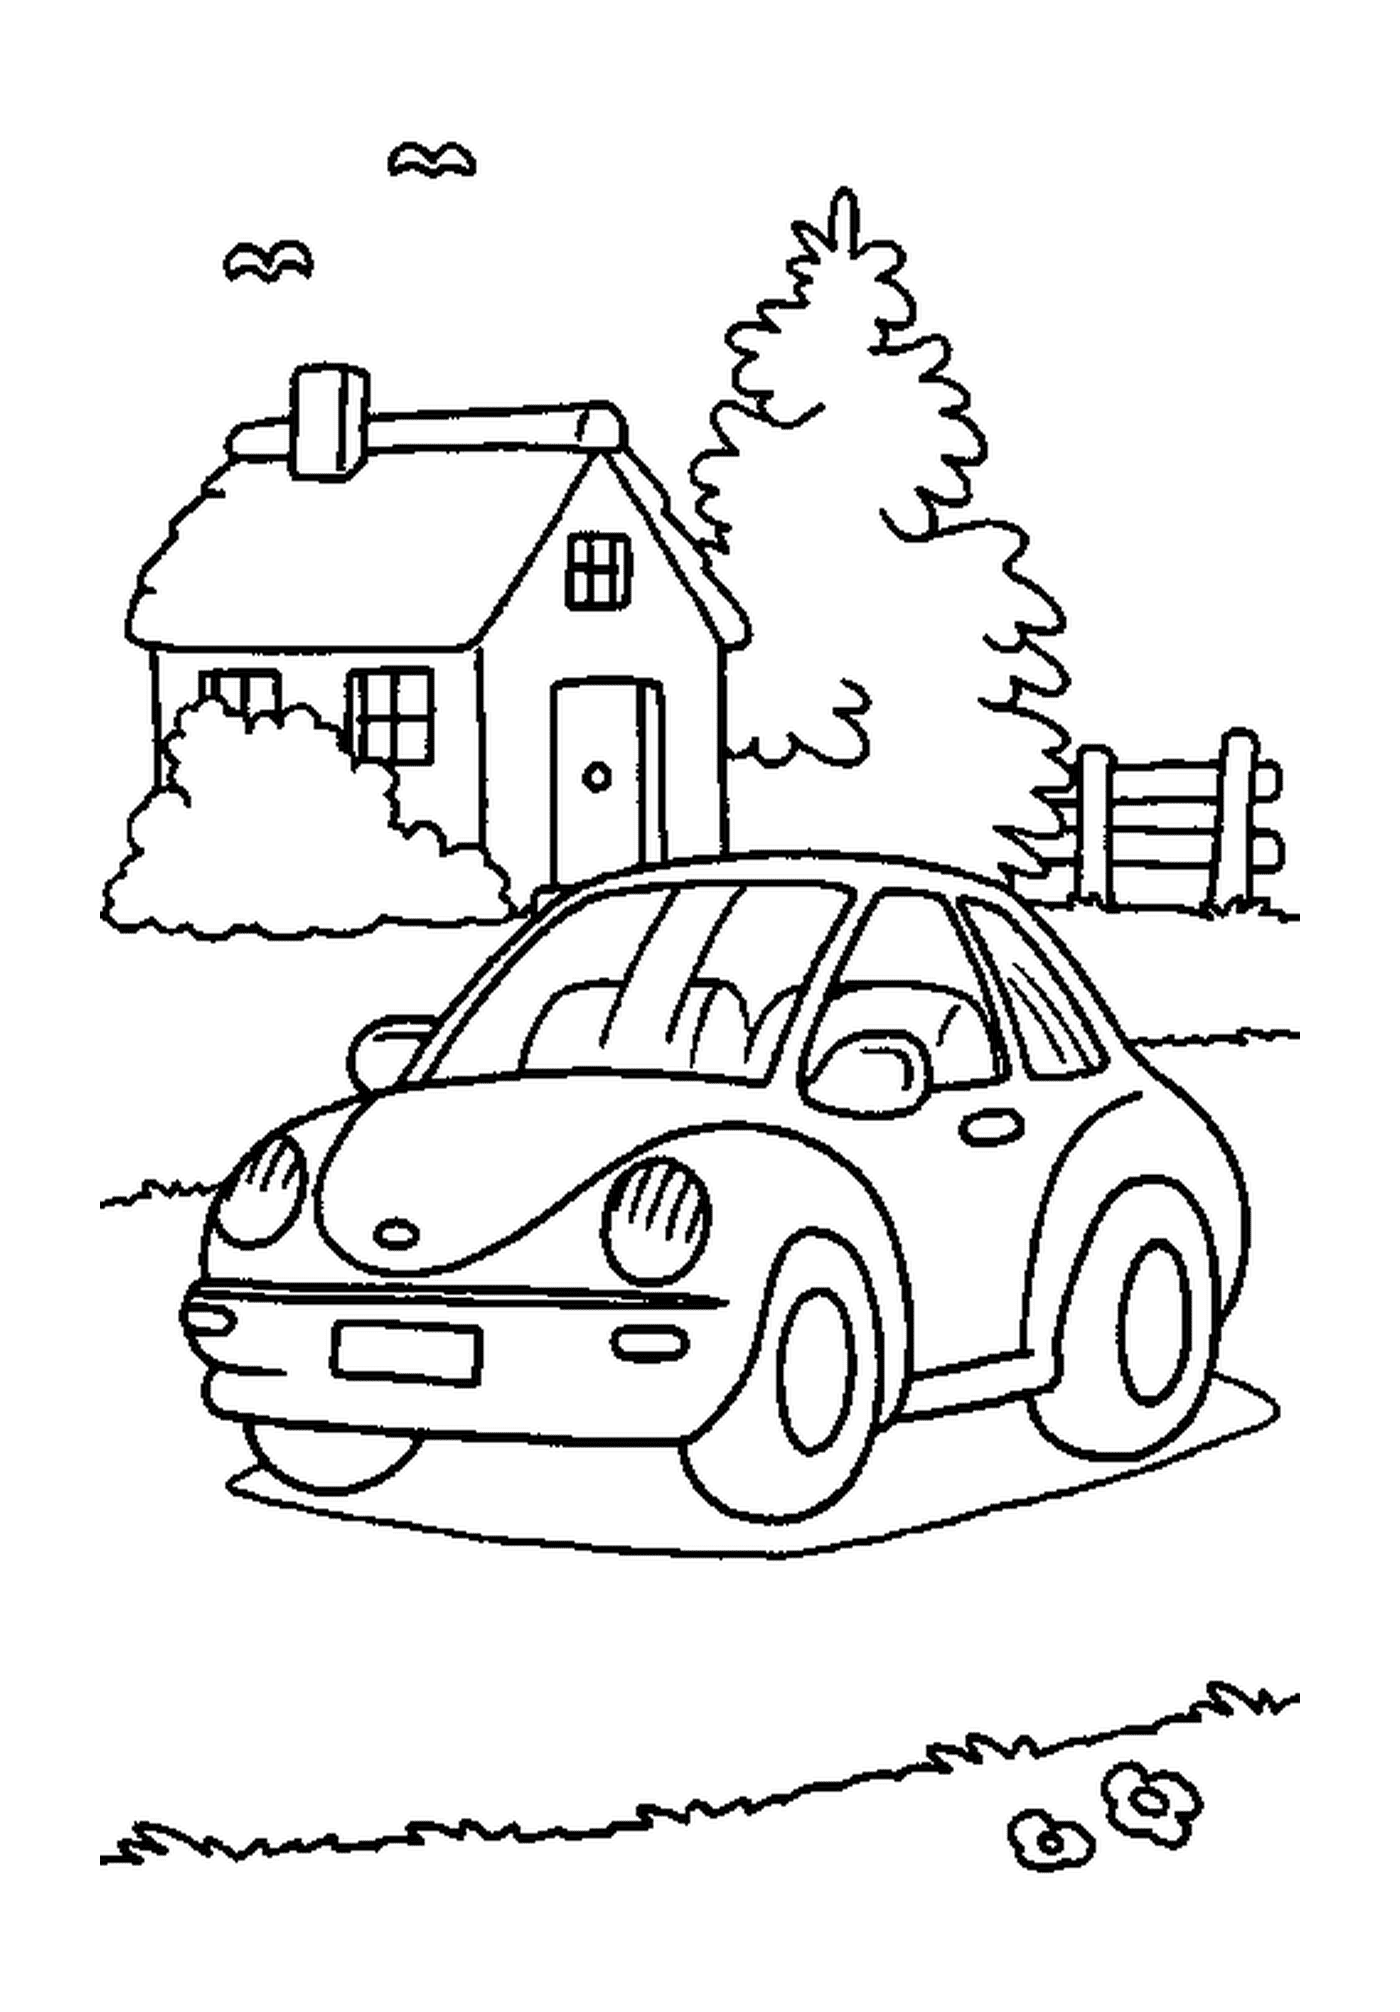  Casa con coche 